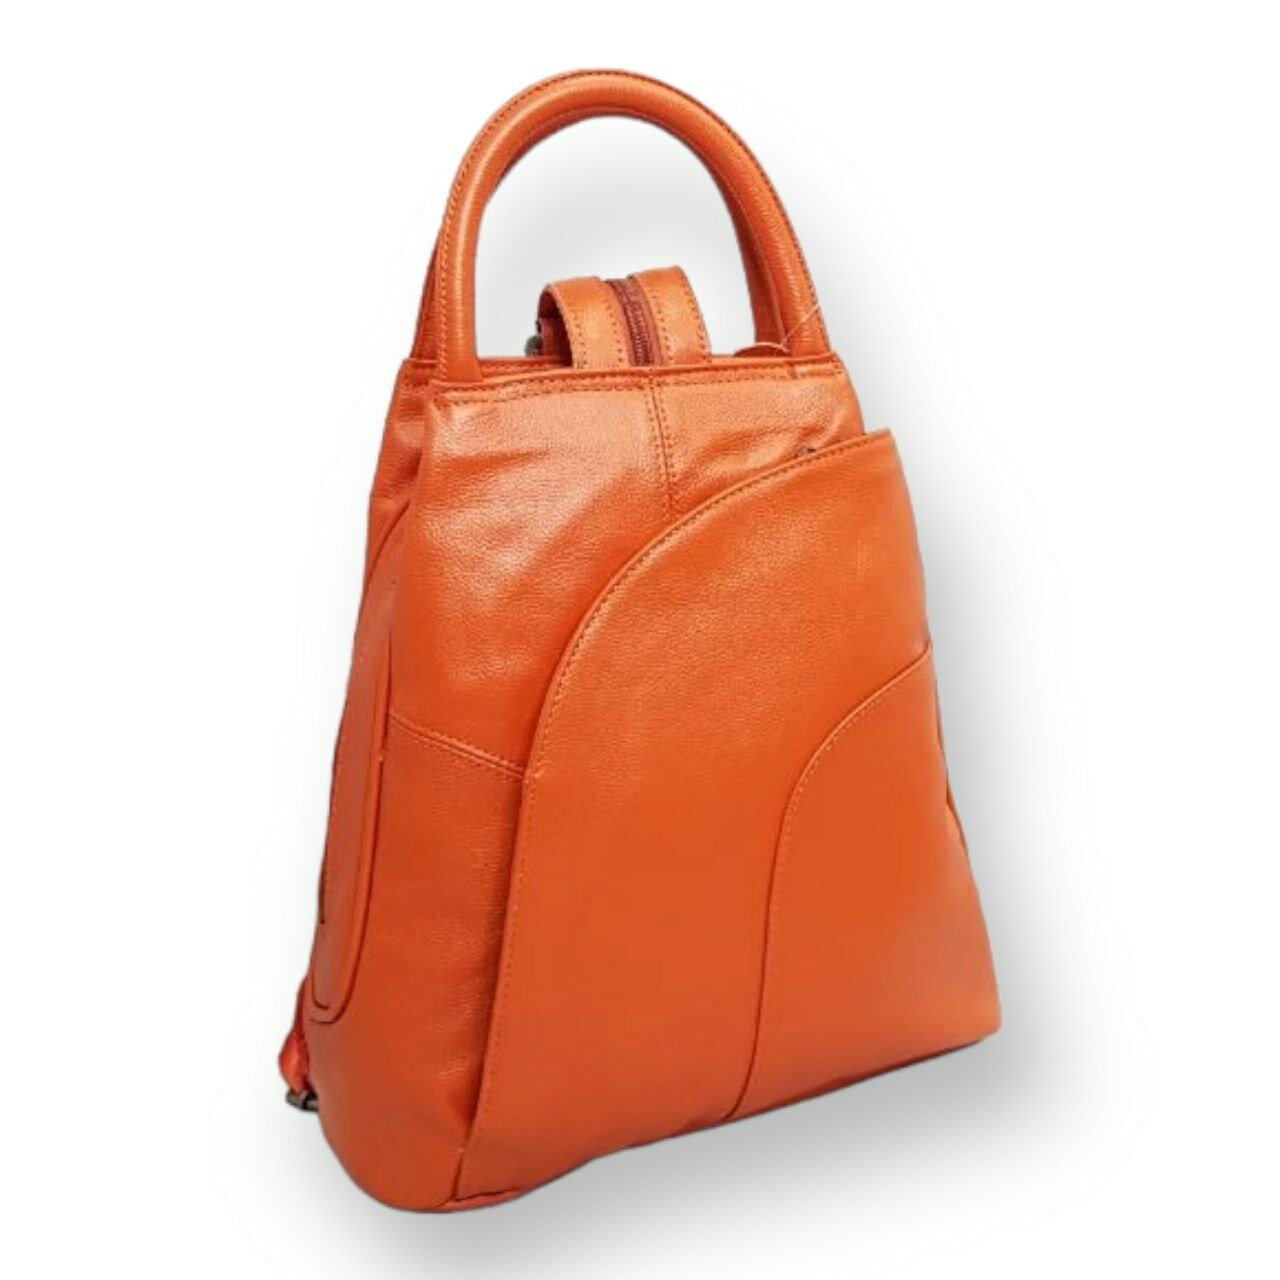 Рюкзак женский, маленький, кожаный рюкзак, городской, рюкзак-трансформер, оранжевый